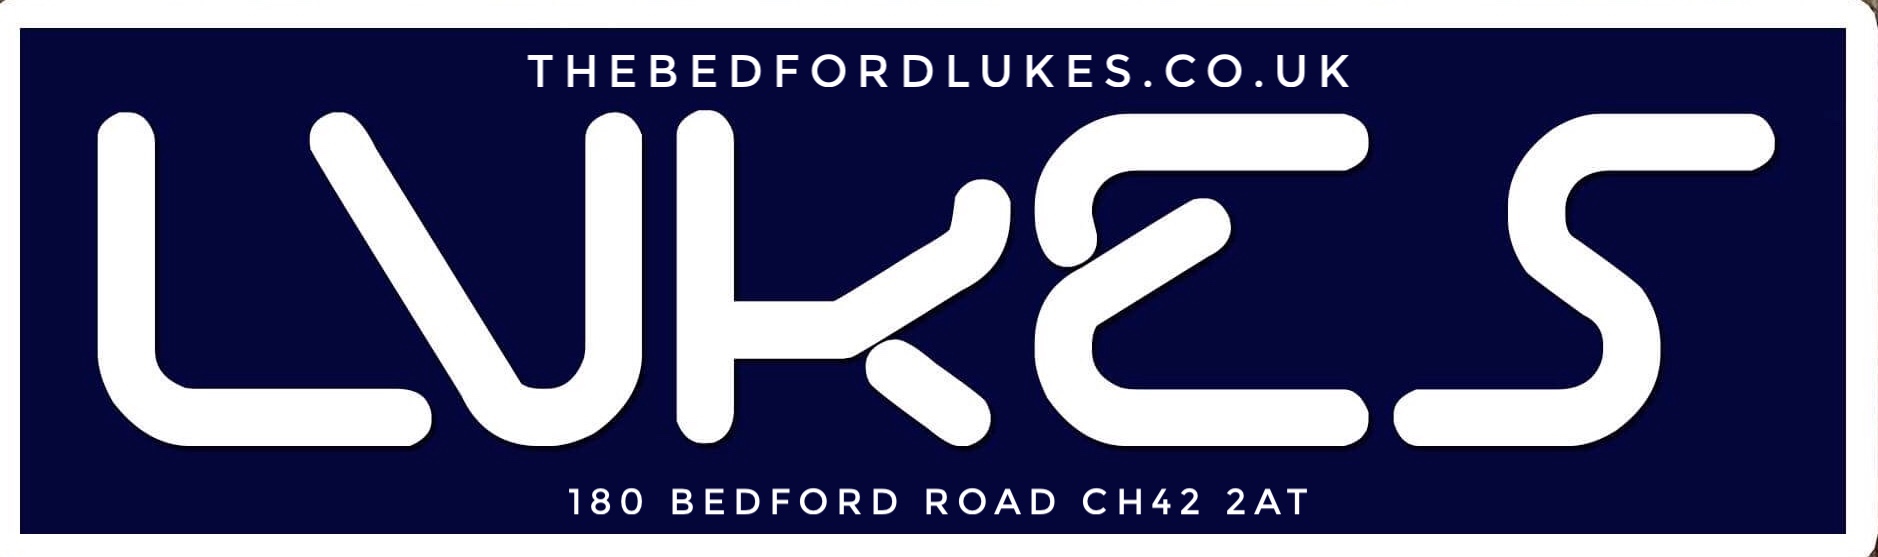 logo for The Bedford -“Luke’s”